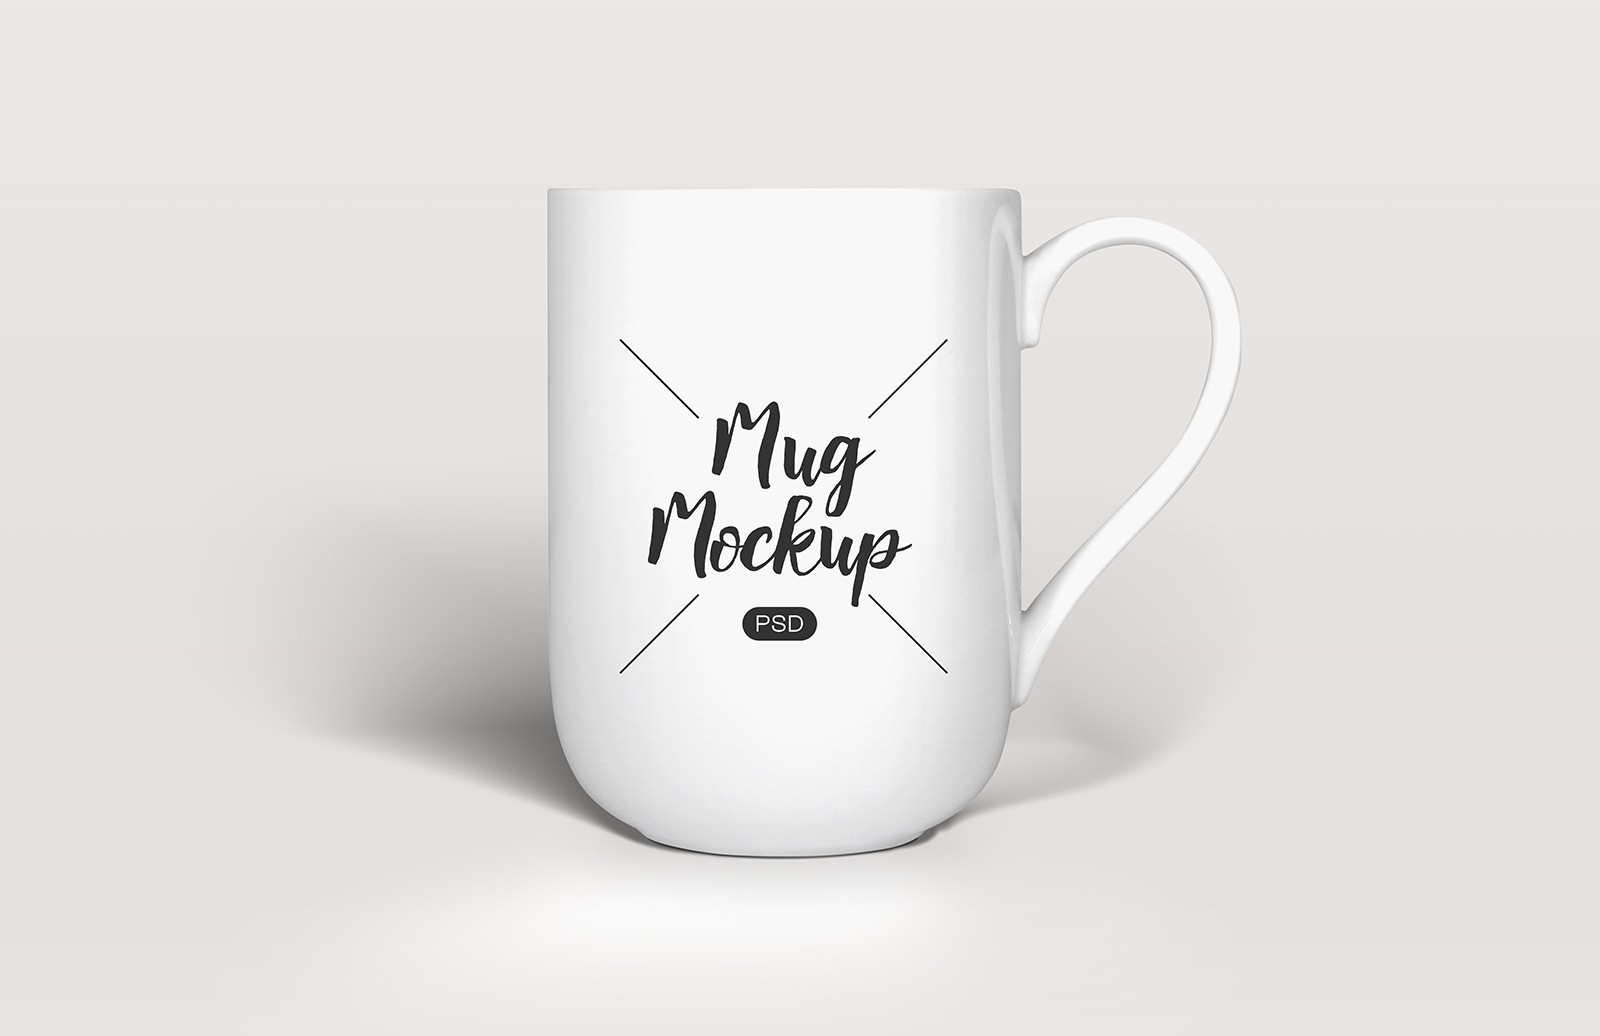 咖啡杯陶瓷杯样机模板 medialoot-coffee-mu